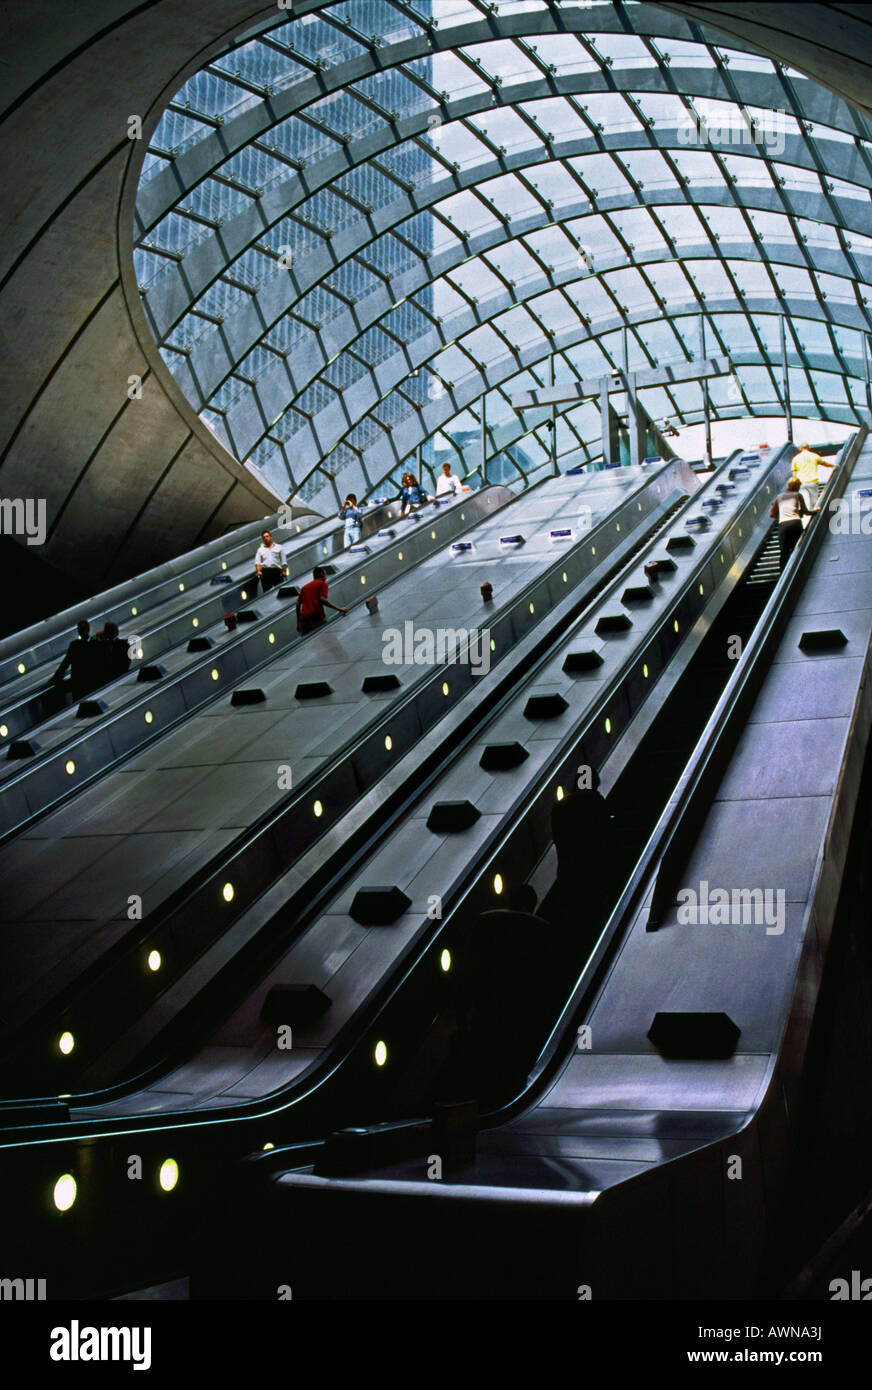 La station de métro Canary Wharf sur l'Escalator Banque D'Images